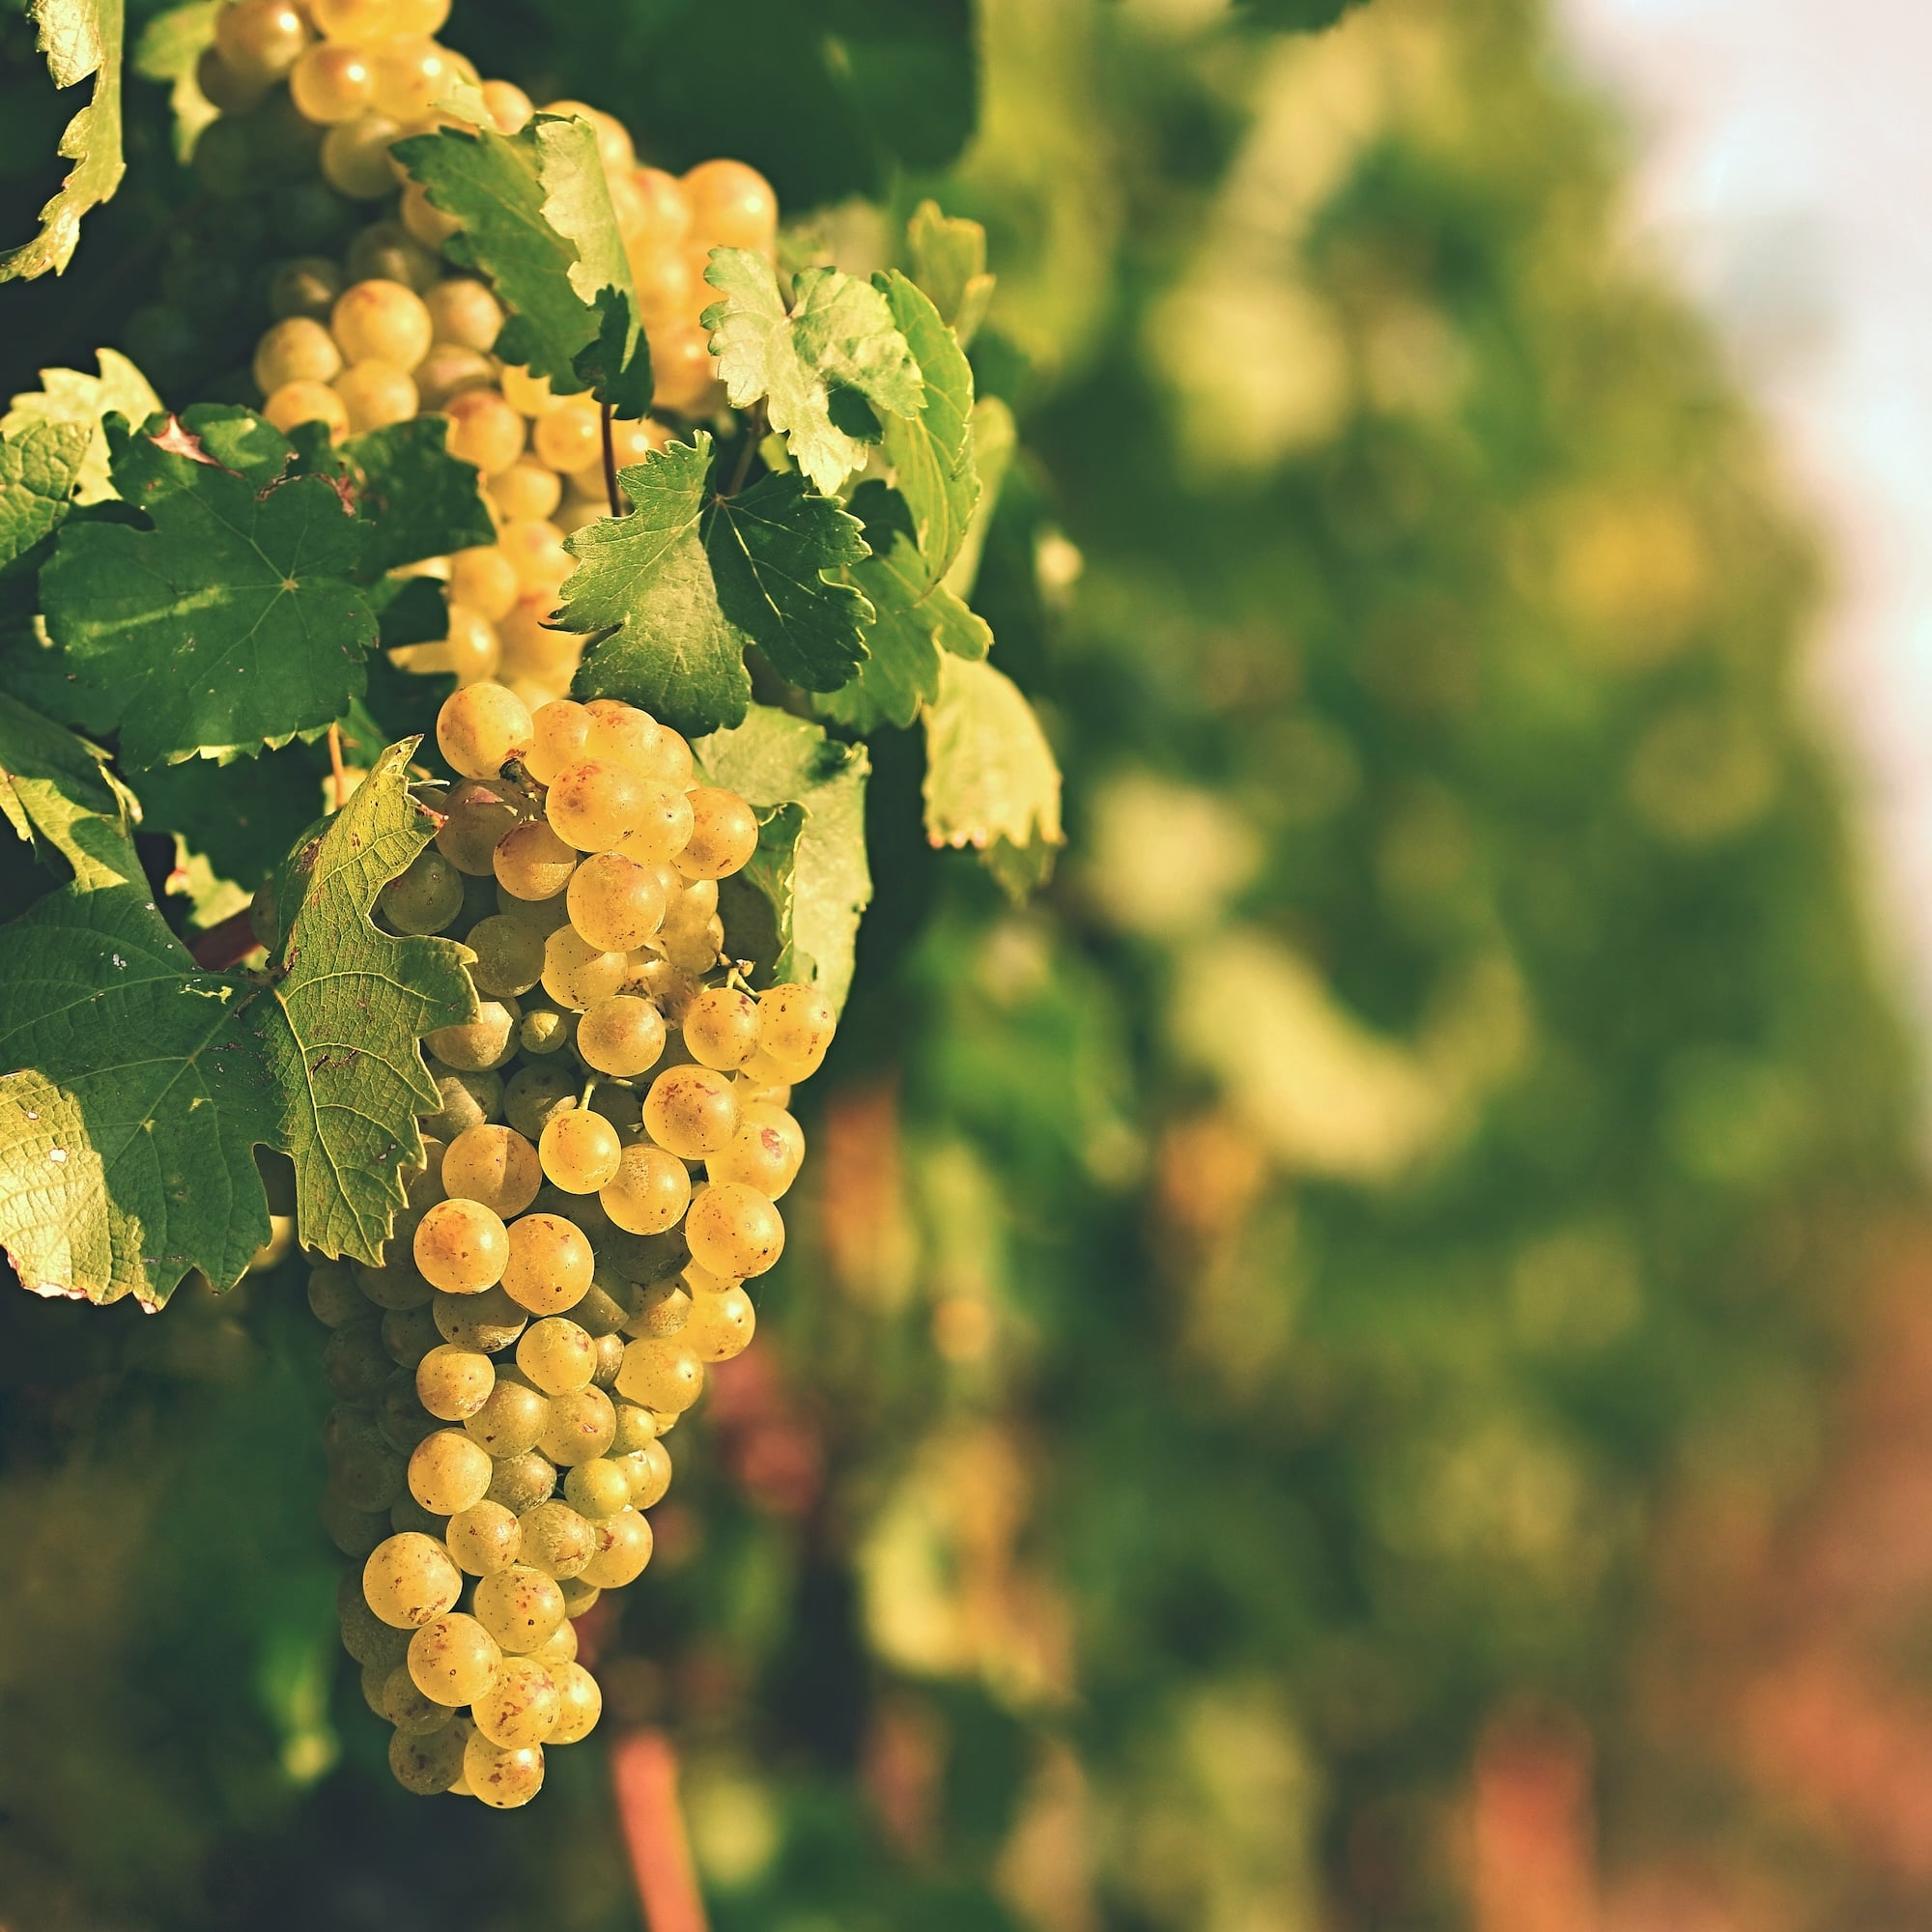 vineyards-sunset-autumn-harvest-ripe-grapes-wine-region-southern-moravia-czech-republic-v-min